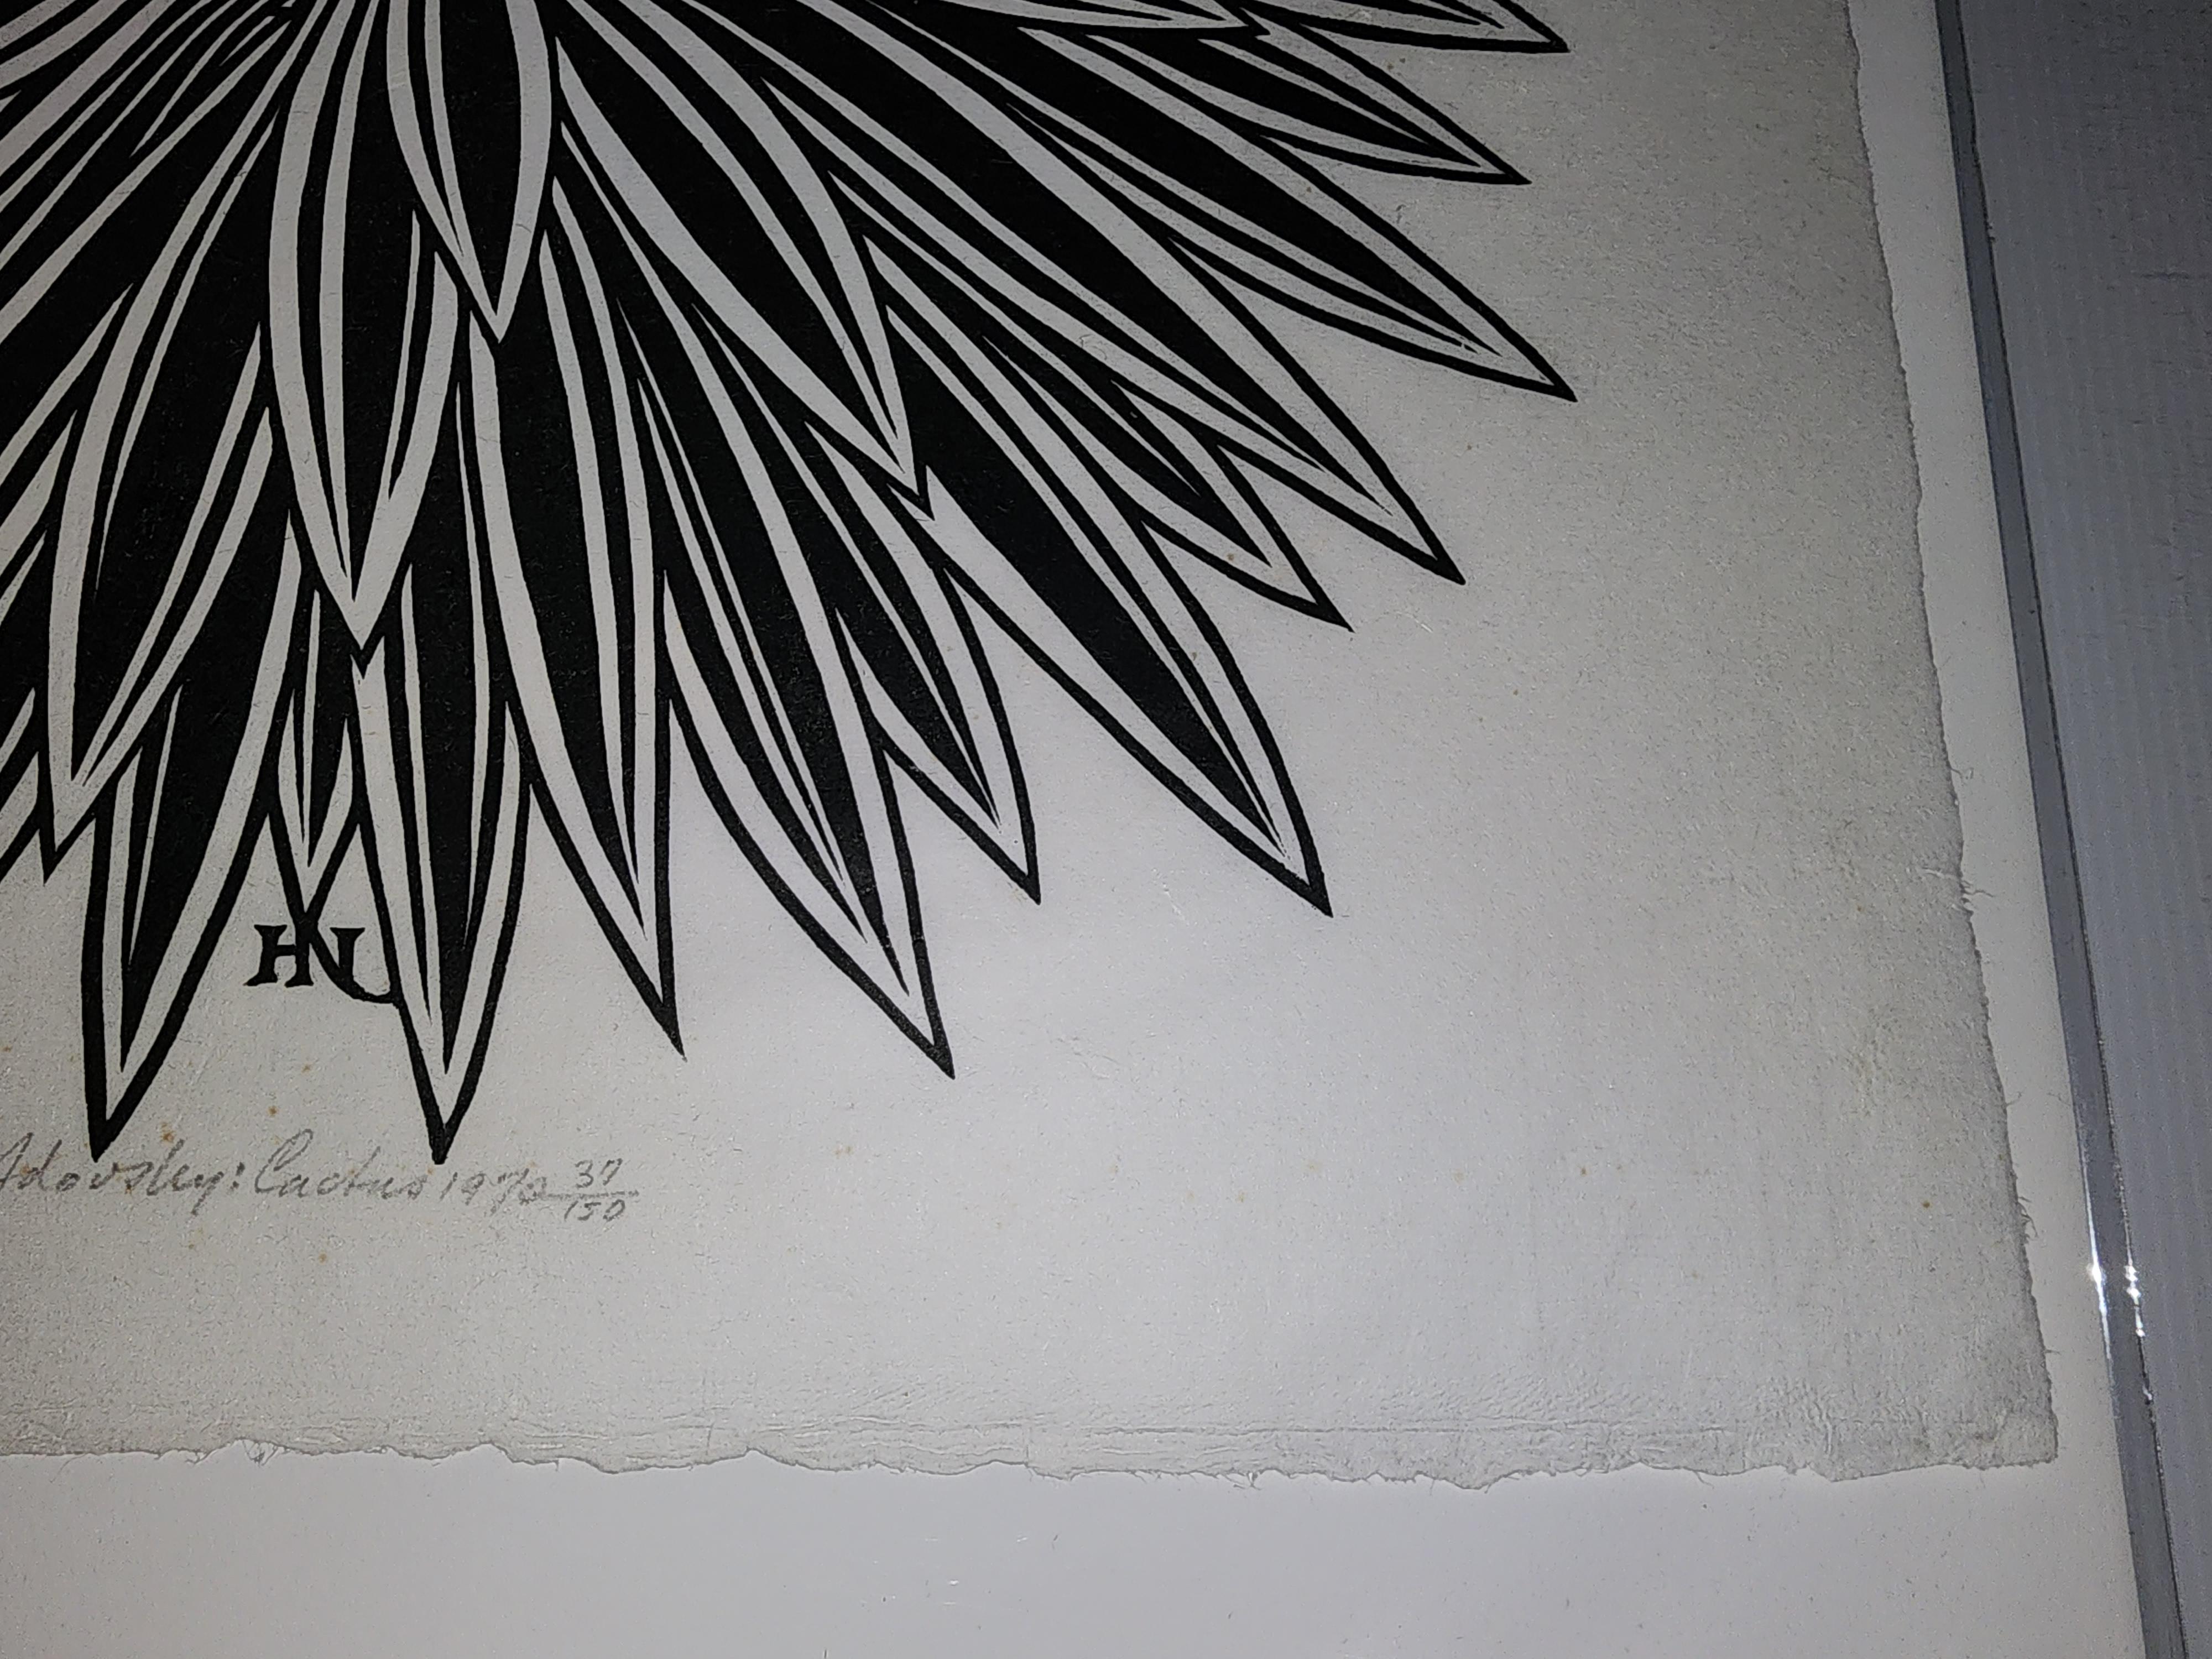 Kaktus, ein Holzschnitt von Jaques Hnizdovsky aus dem Jahr 1970, Nr. 37 aus einer Auflage von 150 Stück.
Tahir Kat. Nr. 93.
Schöner dunkler Abdruck mit vollen Rändern. 
Keine internationalen Verkäufe!!